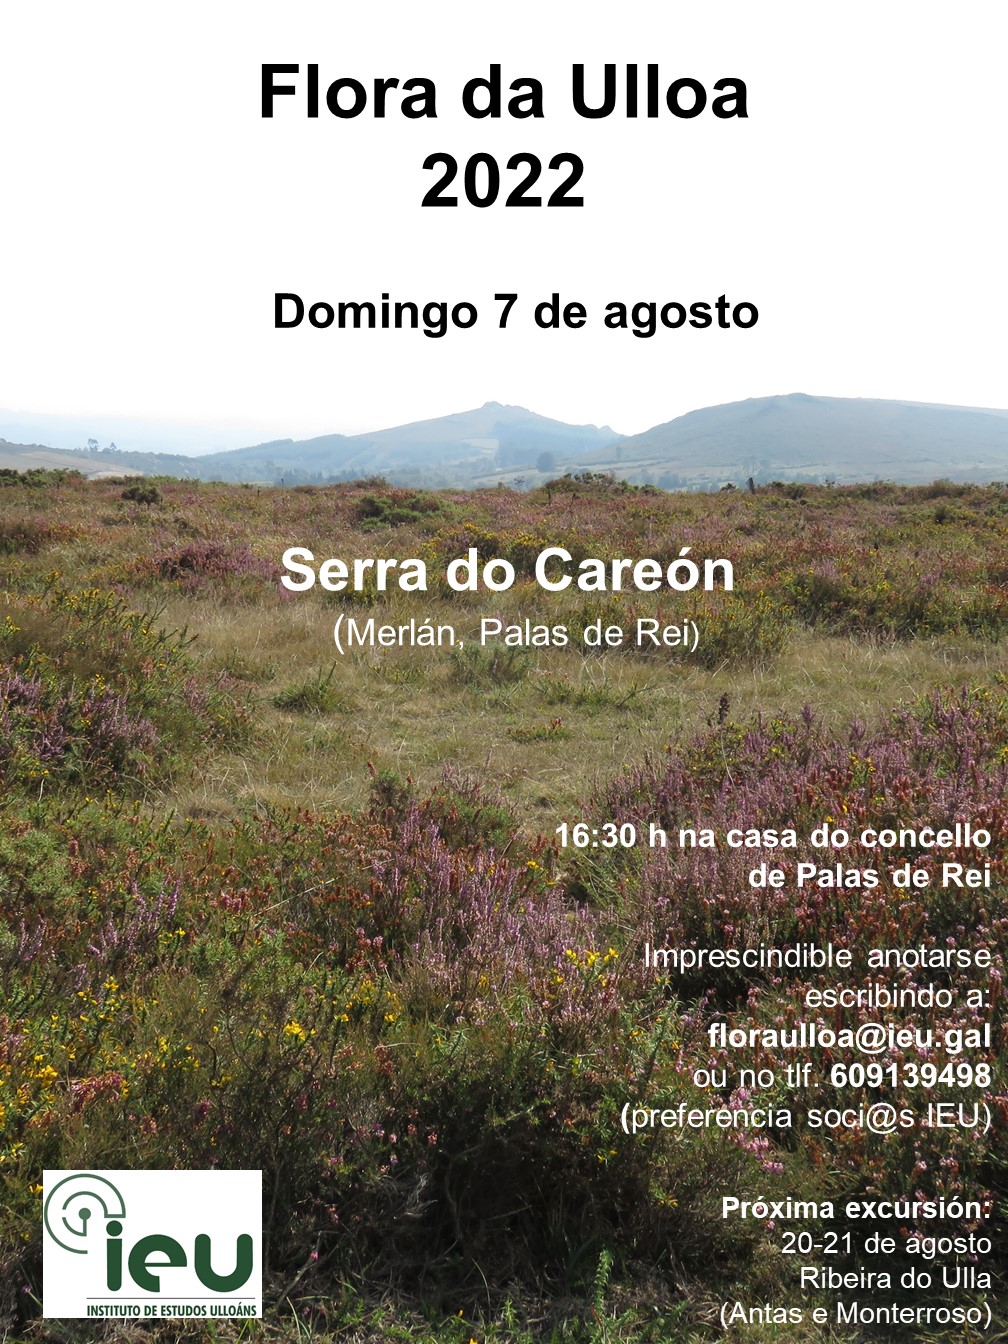 Excursión Flora da Ulloa 13ª-2022, Serra do Careón, Instituto de Estudos Ulloáns IEU